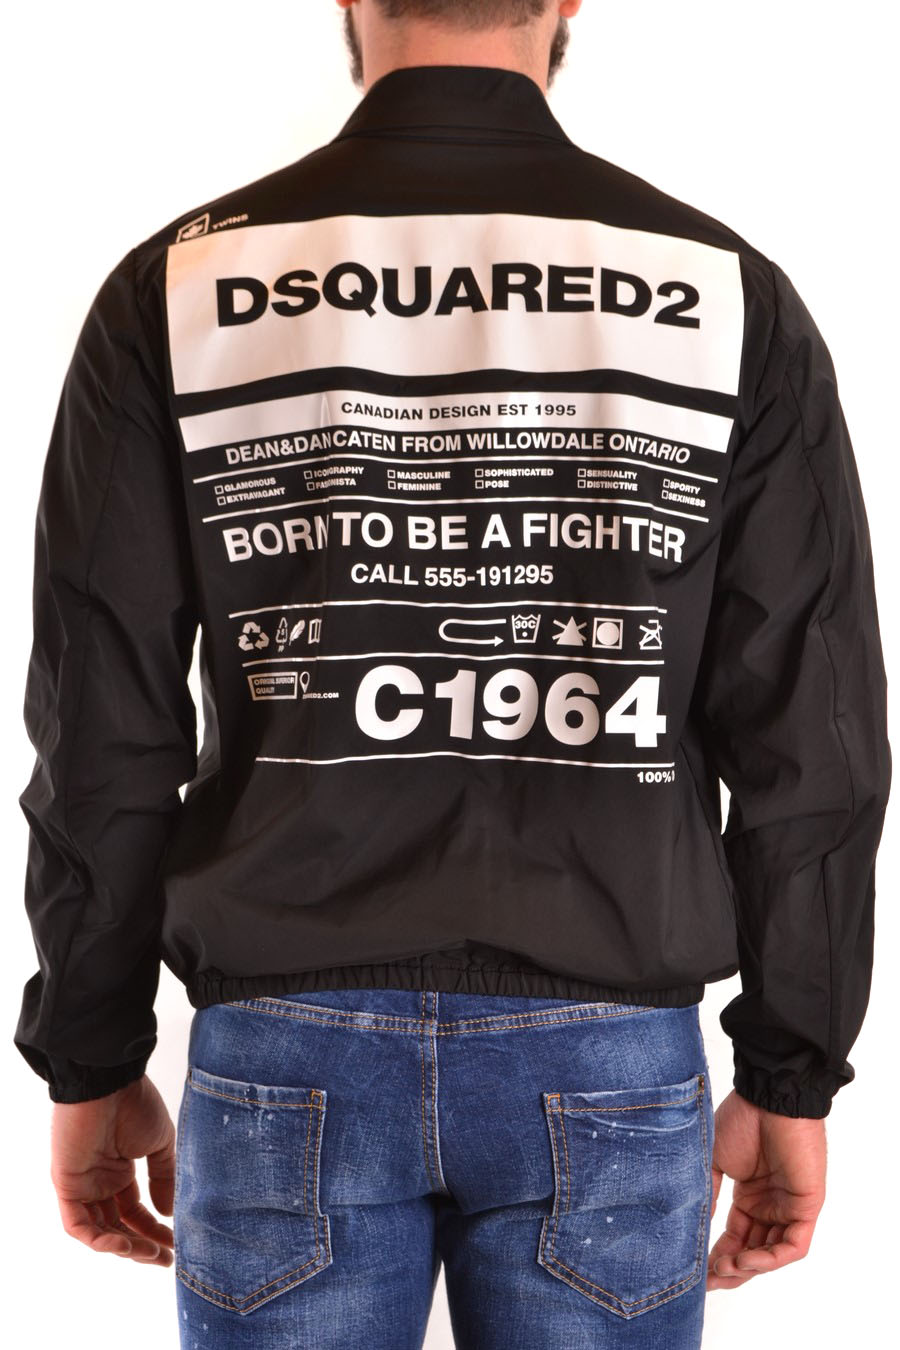 DSQUARED2 Jackets | ViganoBoutique.com